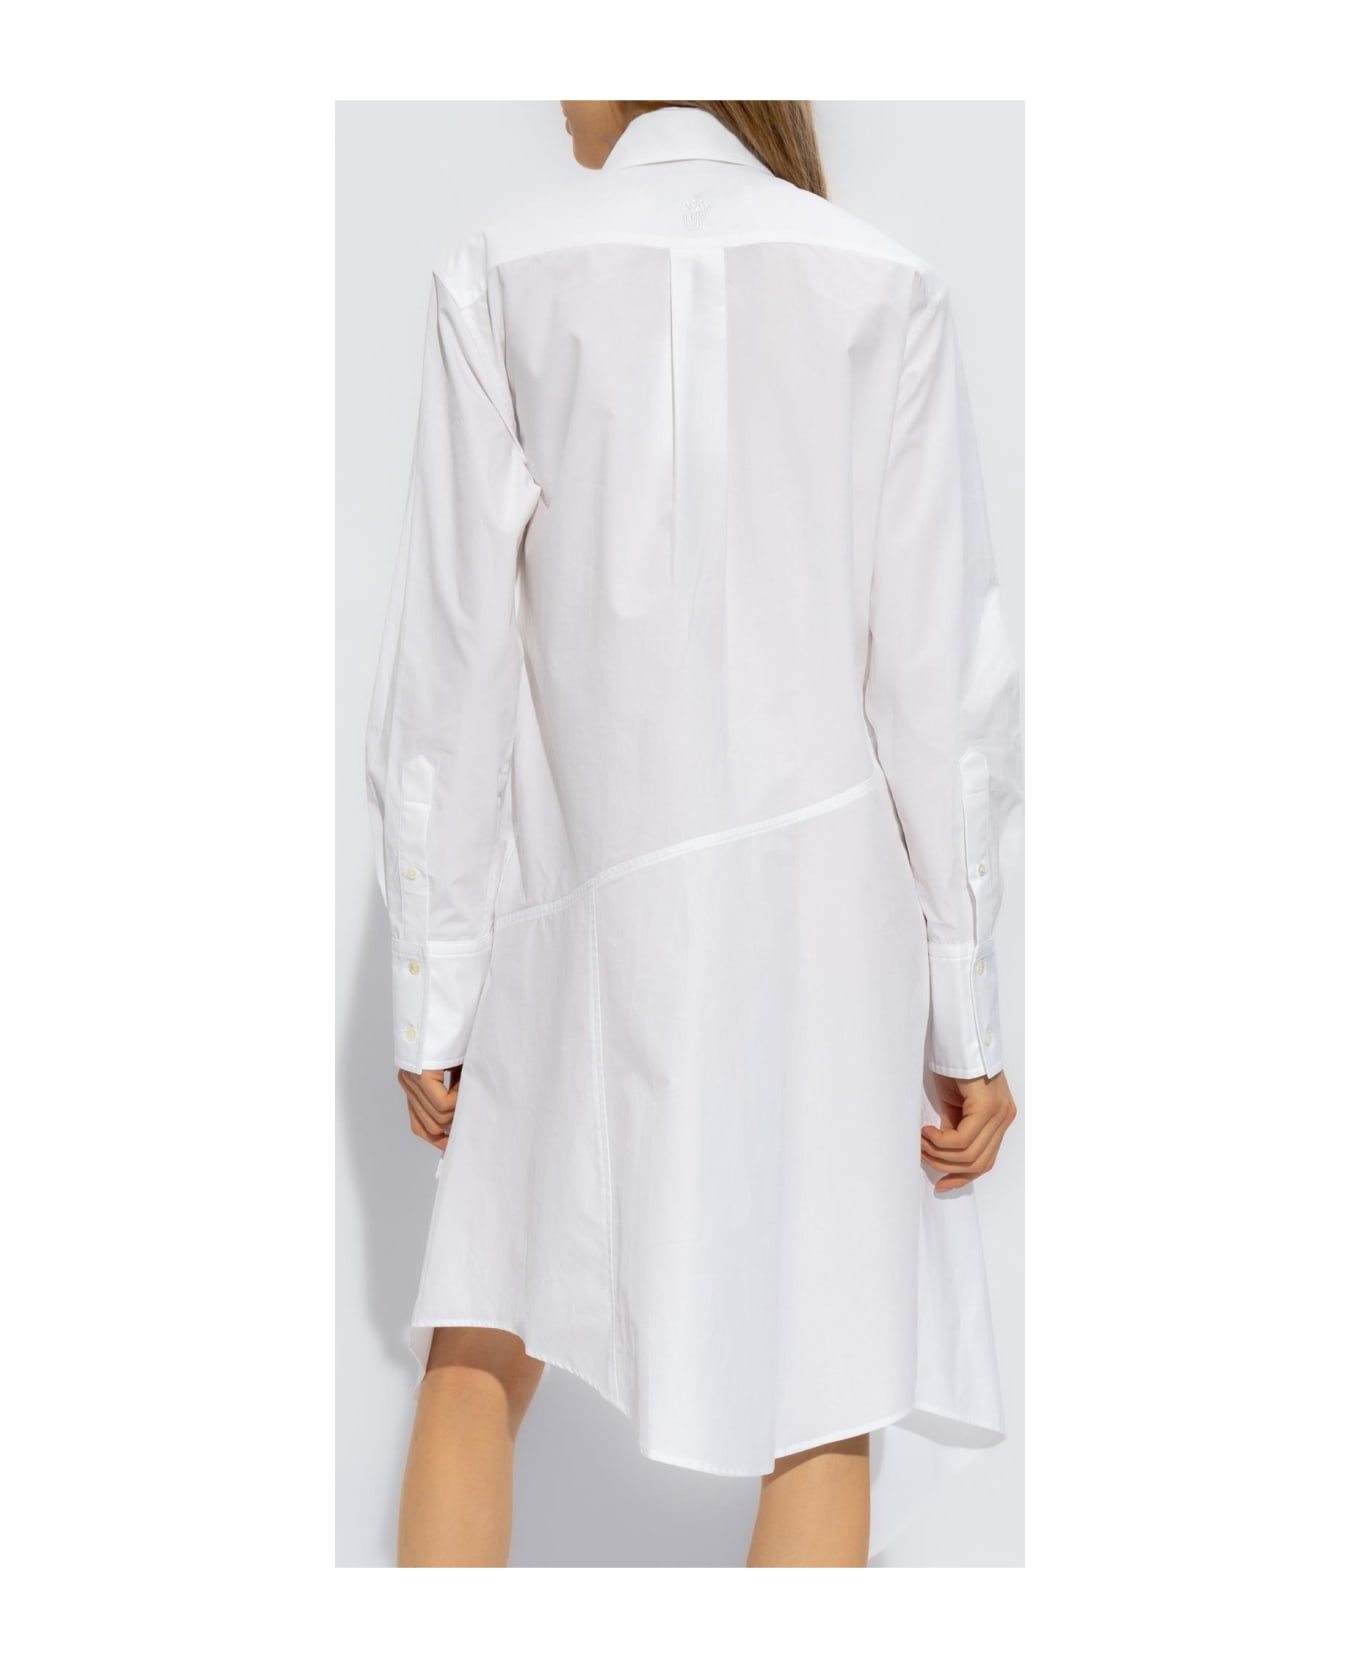 J.W. Anderson Shirt Dress - White